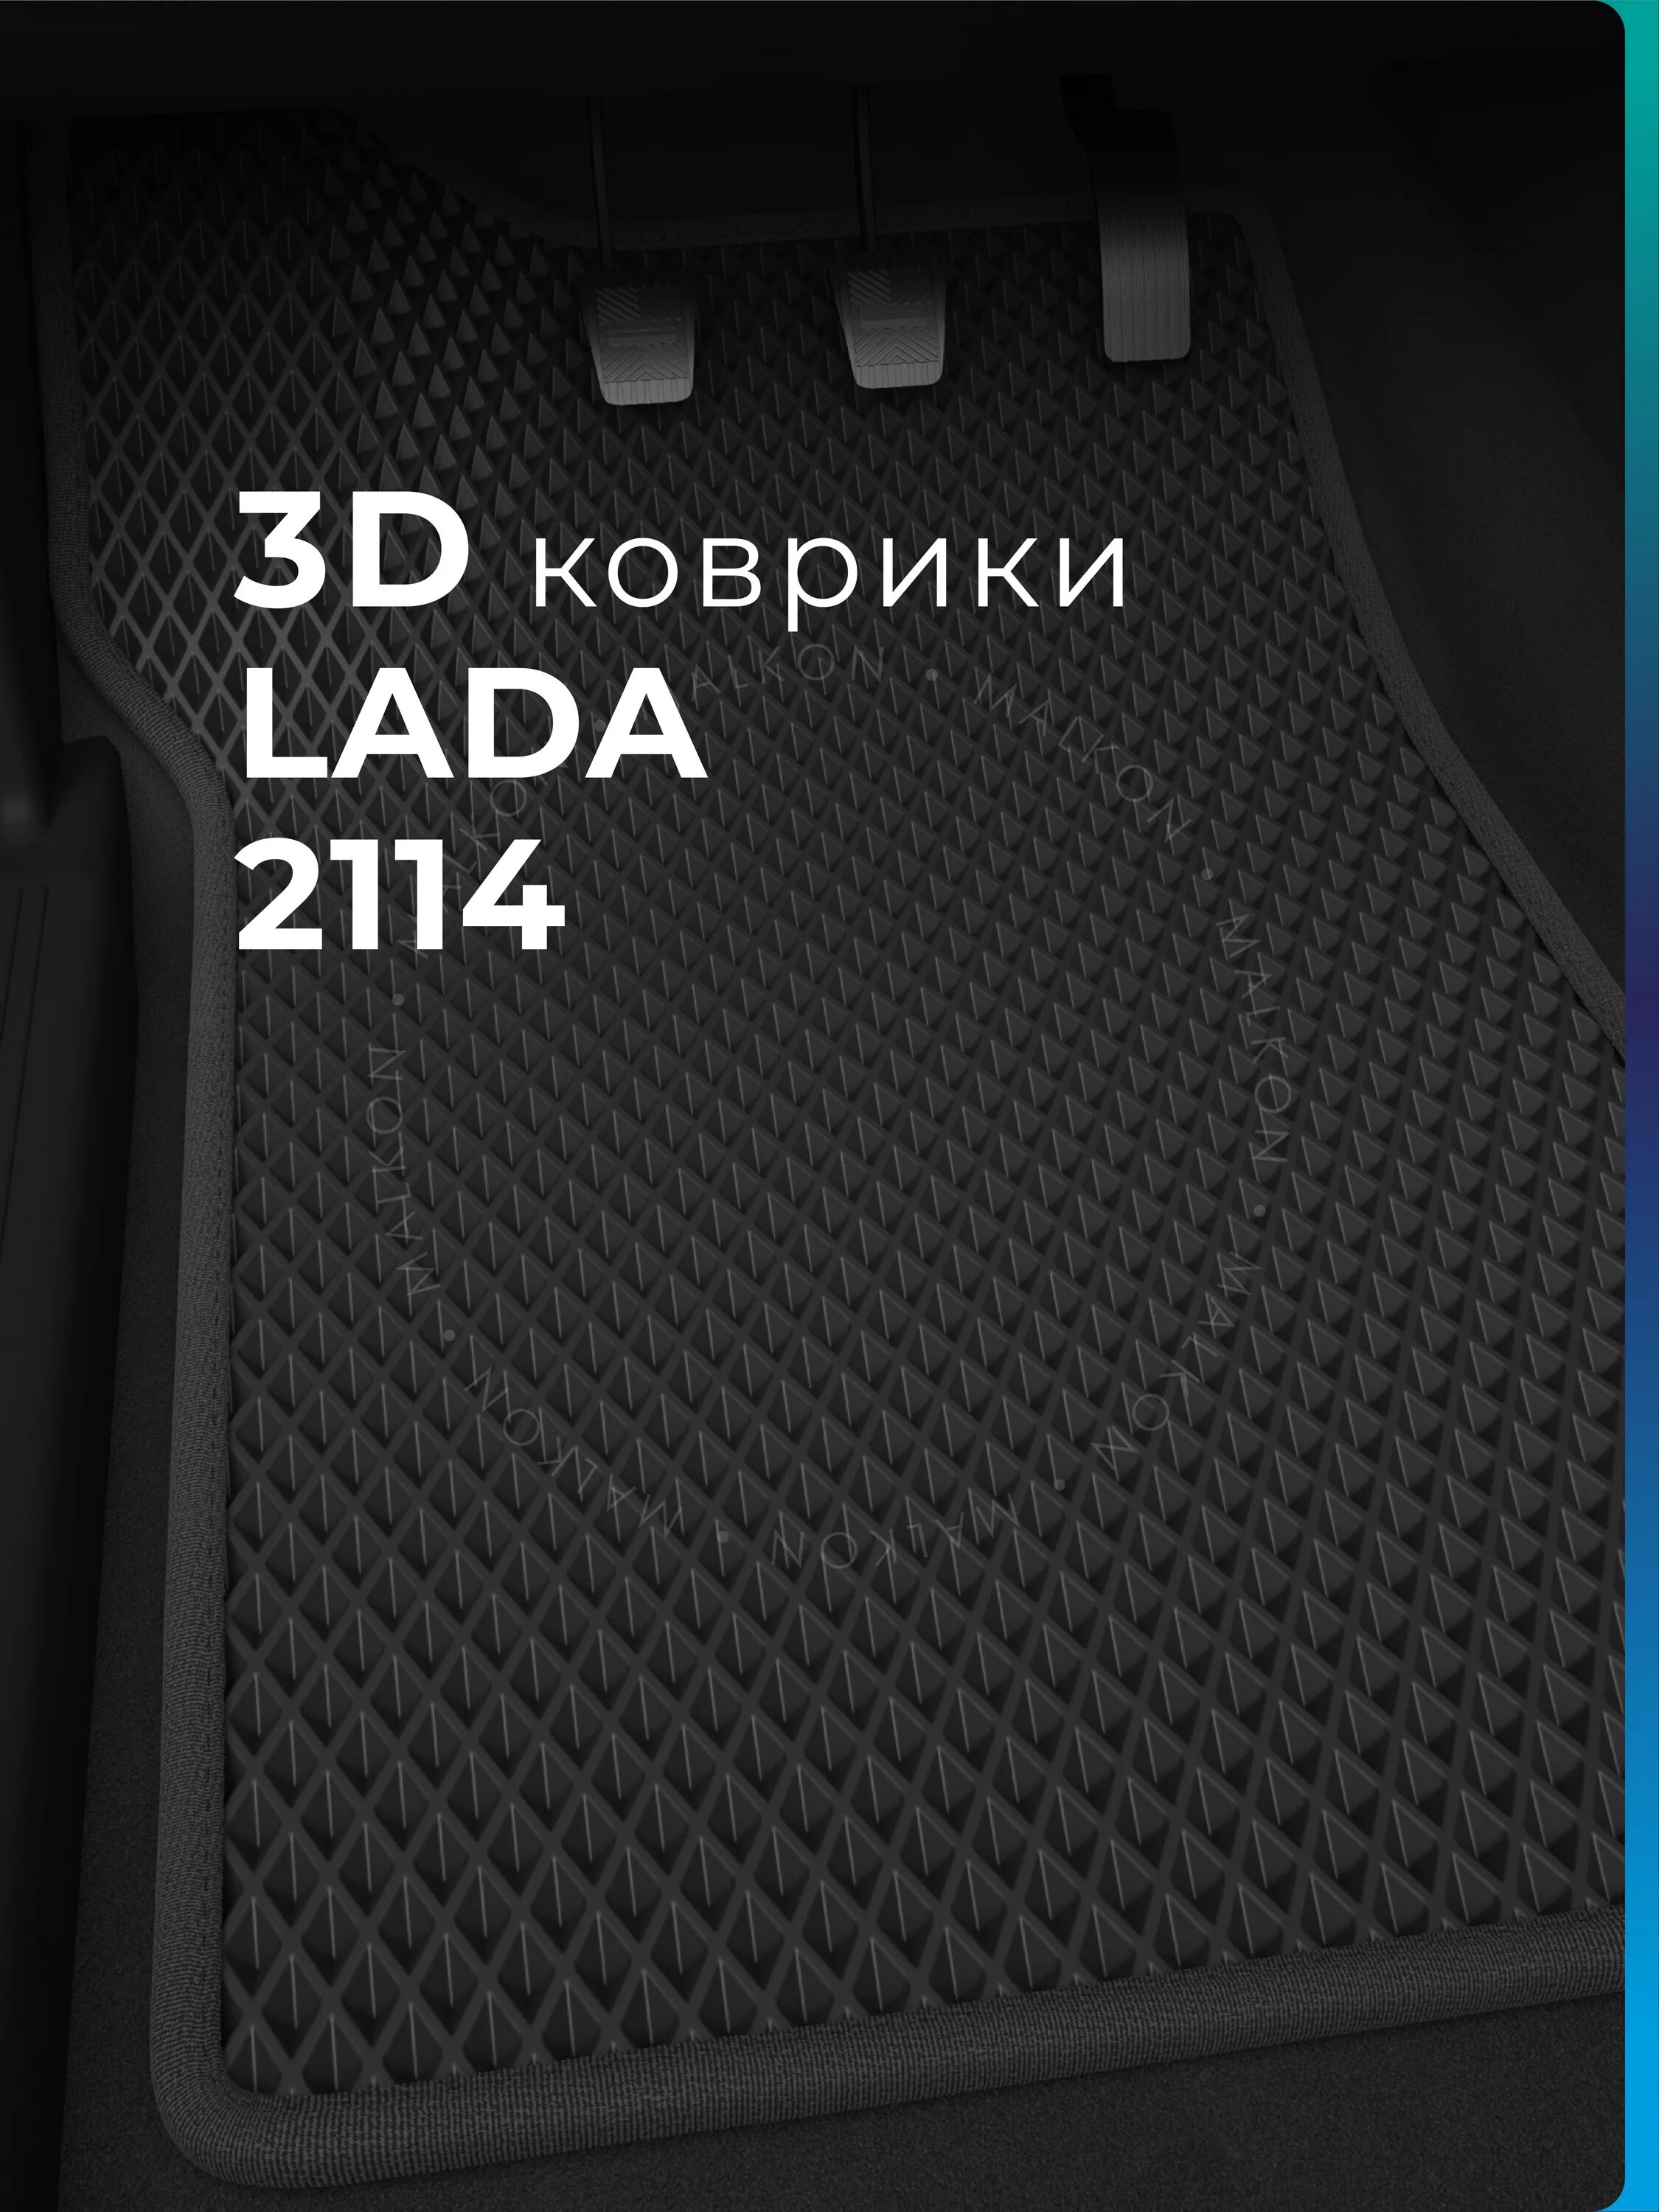 Коврики ЭВА ВАЗ 2114 3d. Черные ЭВА коврики ВАЗ 2114. Эво коврики ВАЗ 2114.